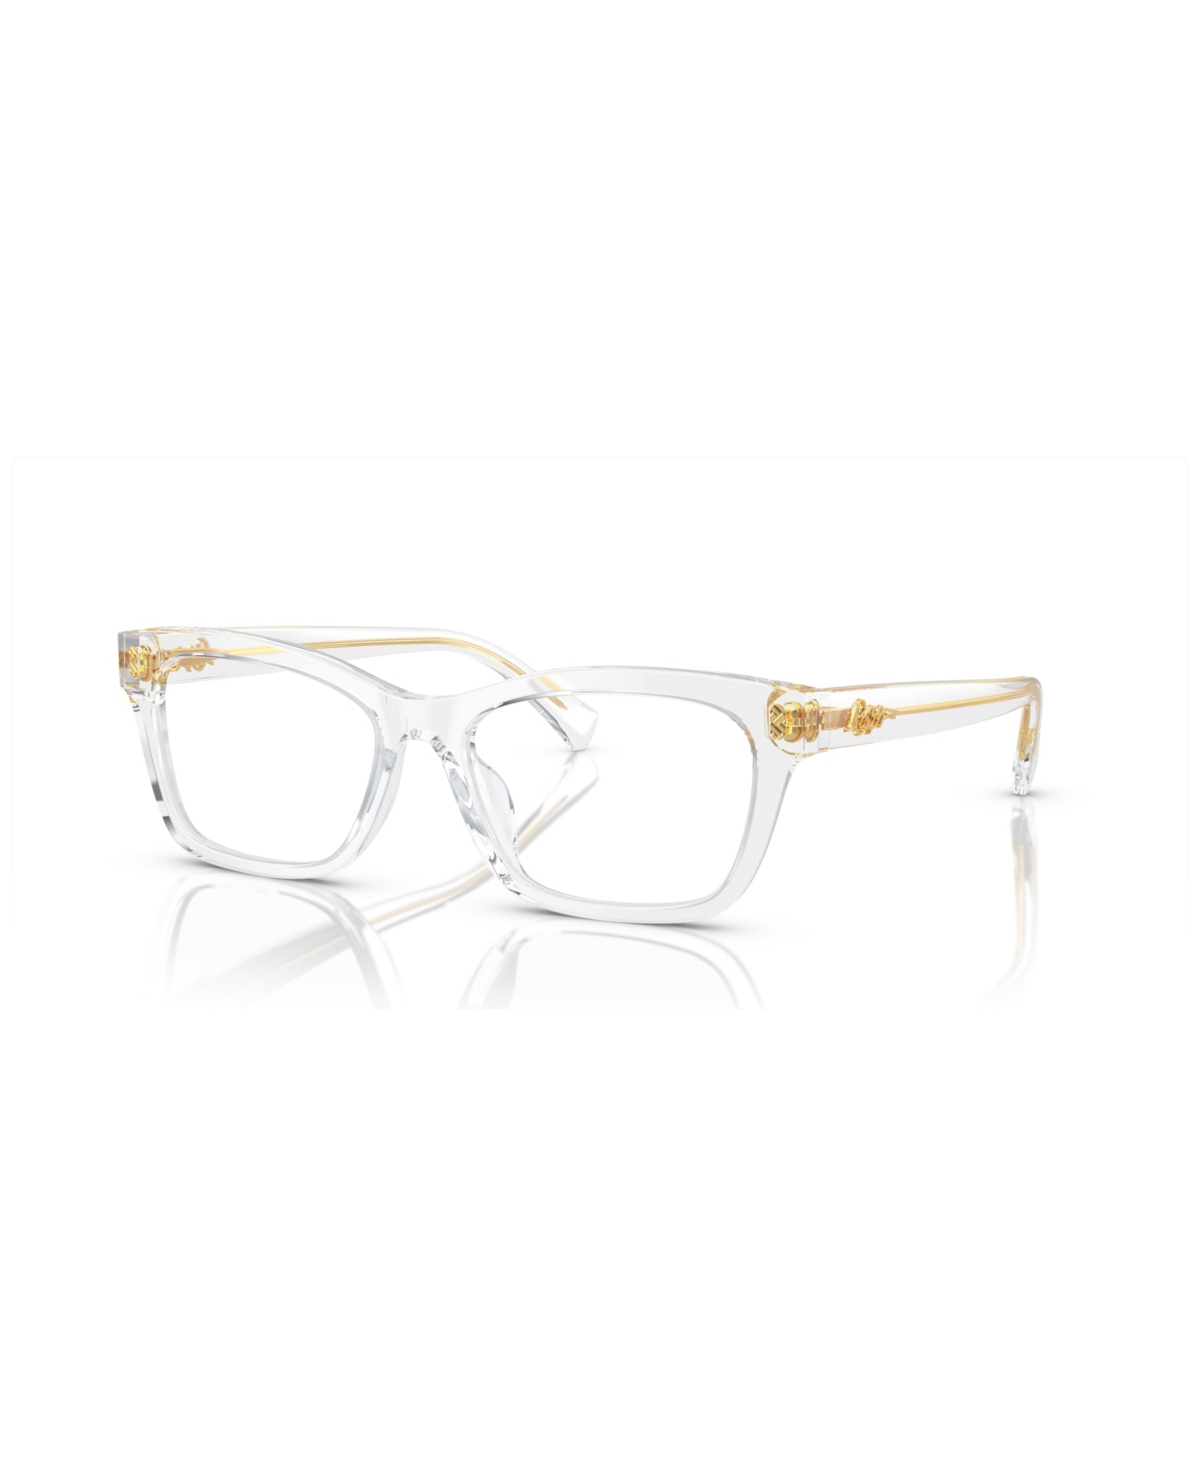 Women's Eyeglasses, RA7154U - Crystal